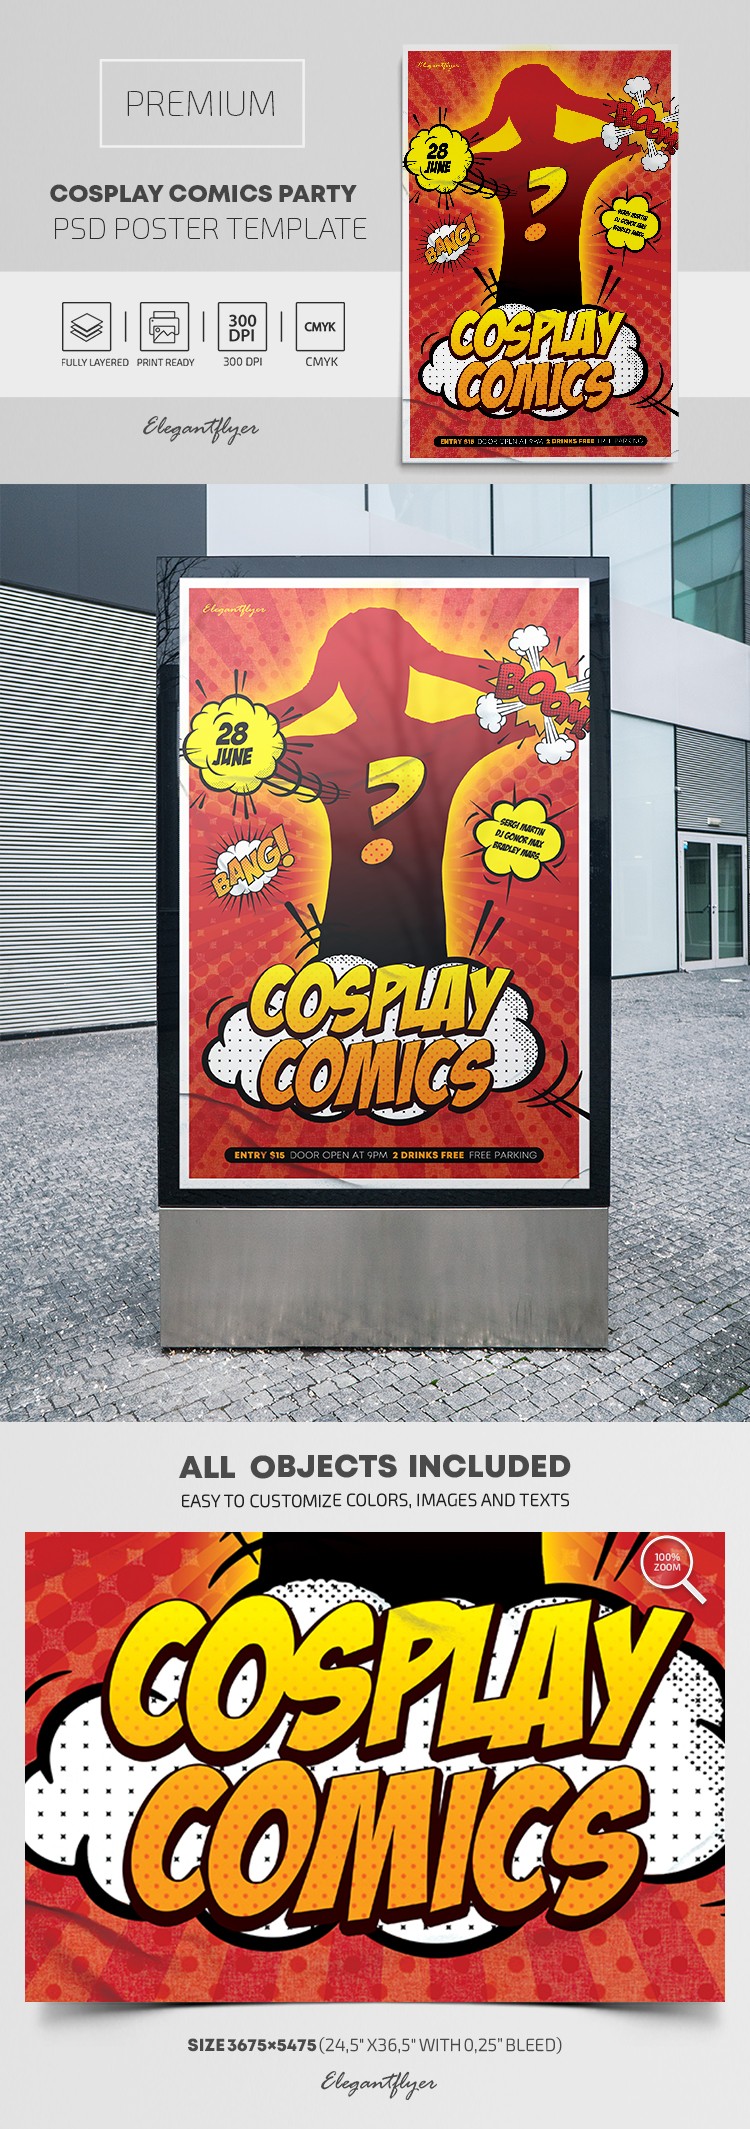 Cartel de la Fiesta de Cosplay de Cómics. by ElegantFlyer